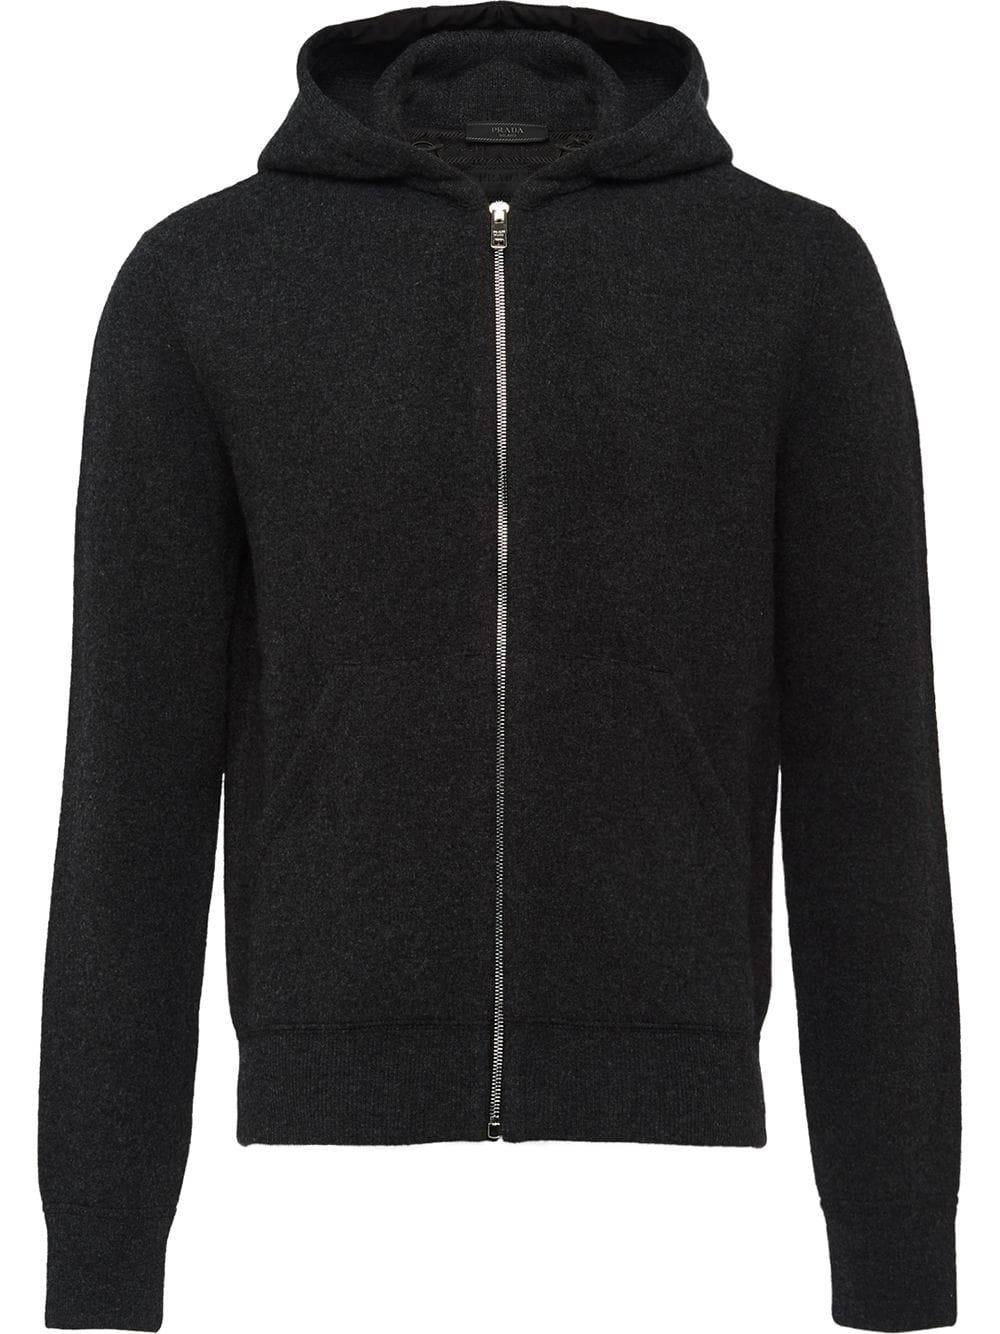 Prada Wool Knitted Hoodie in Black for Men - Lyst